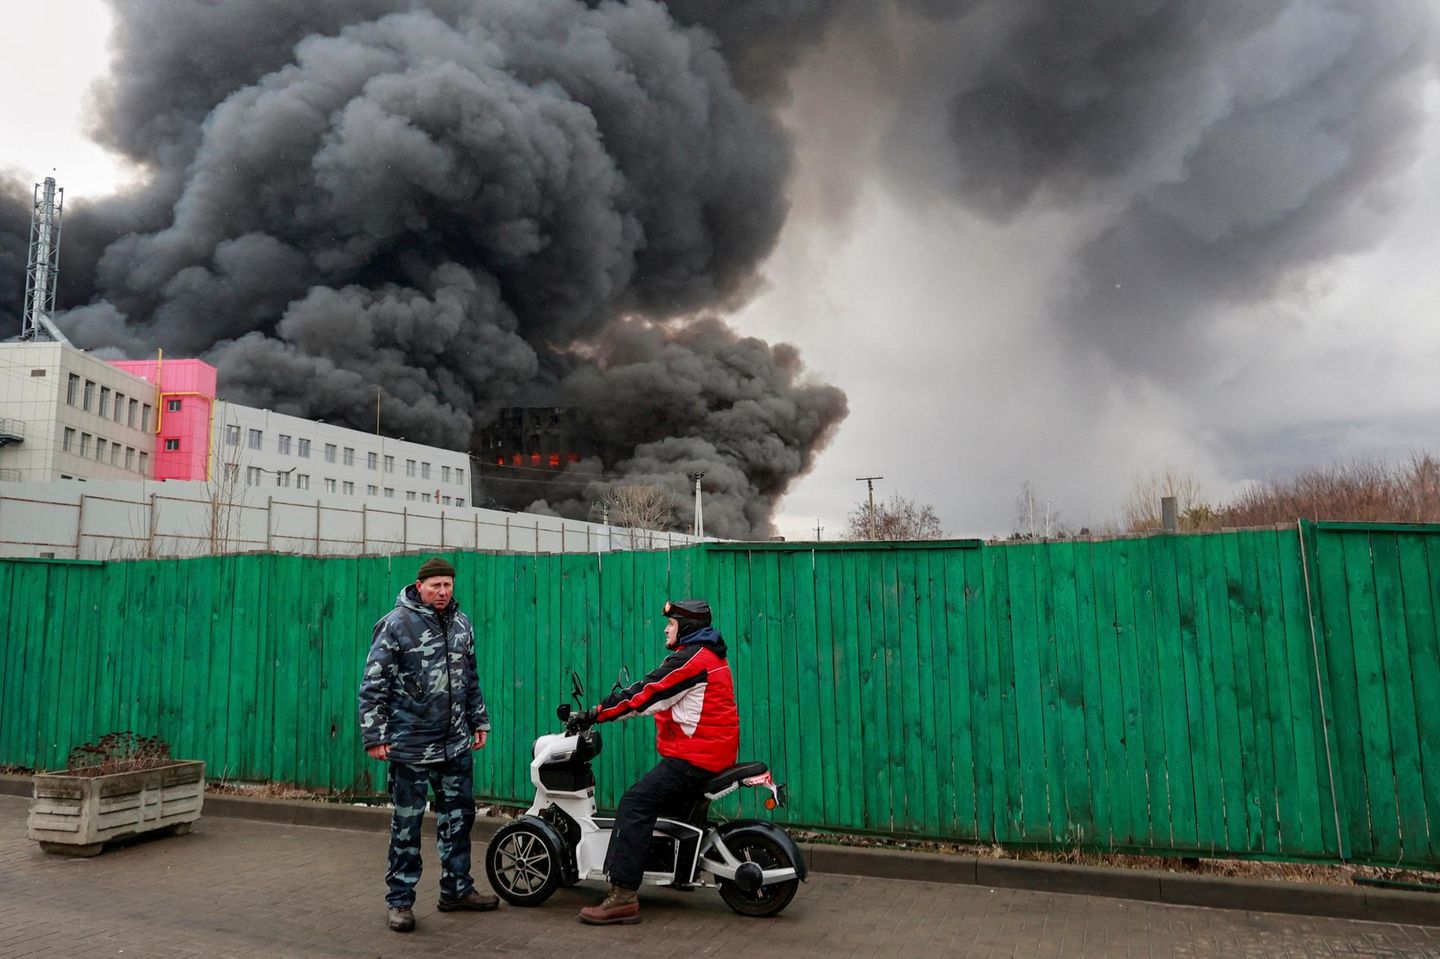 Die Bilder von Leid und Zerstörung in der Ukraine wirken wie aus dem vorigen Jahrhundert. Hier ein brennendes Lagerhaus in Charkiw im Osten des Landes